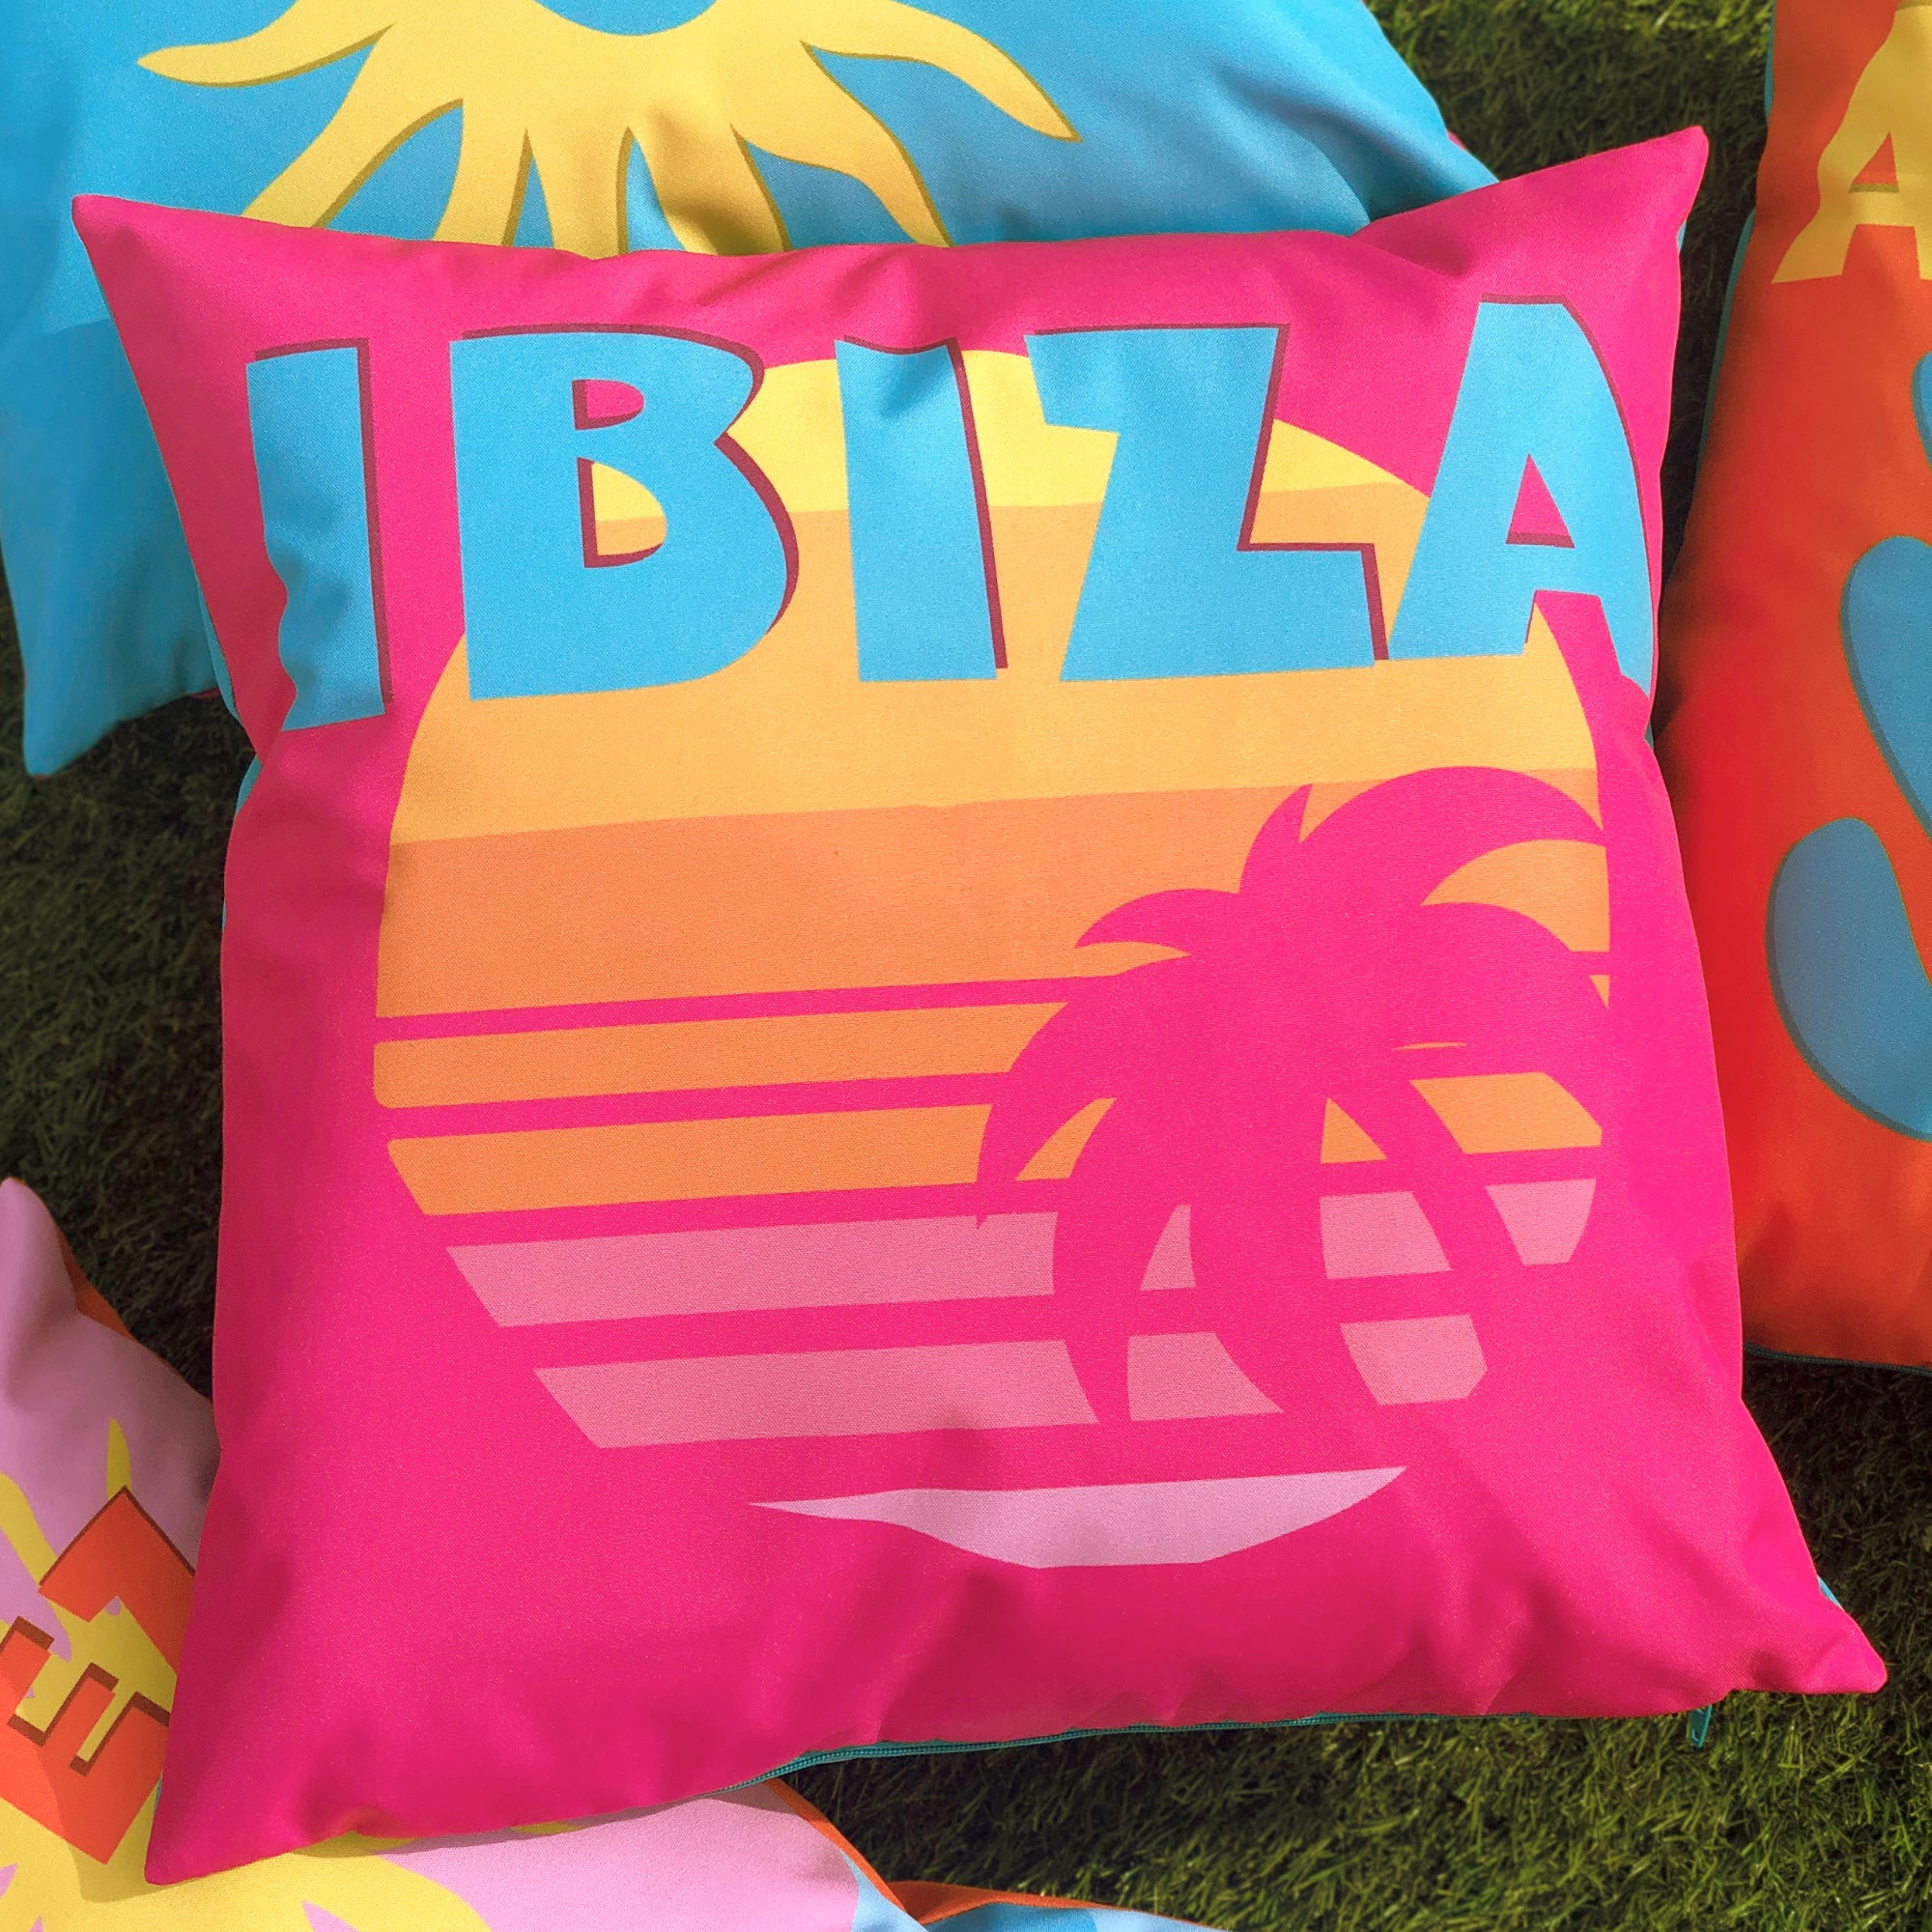 Furn Ibiza Outdoor Cushion Multicoloured